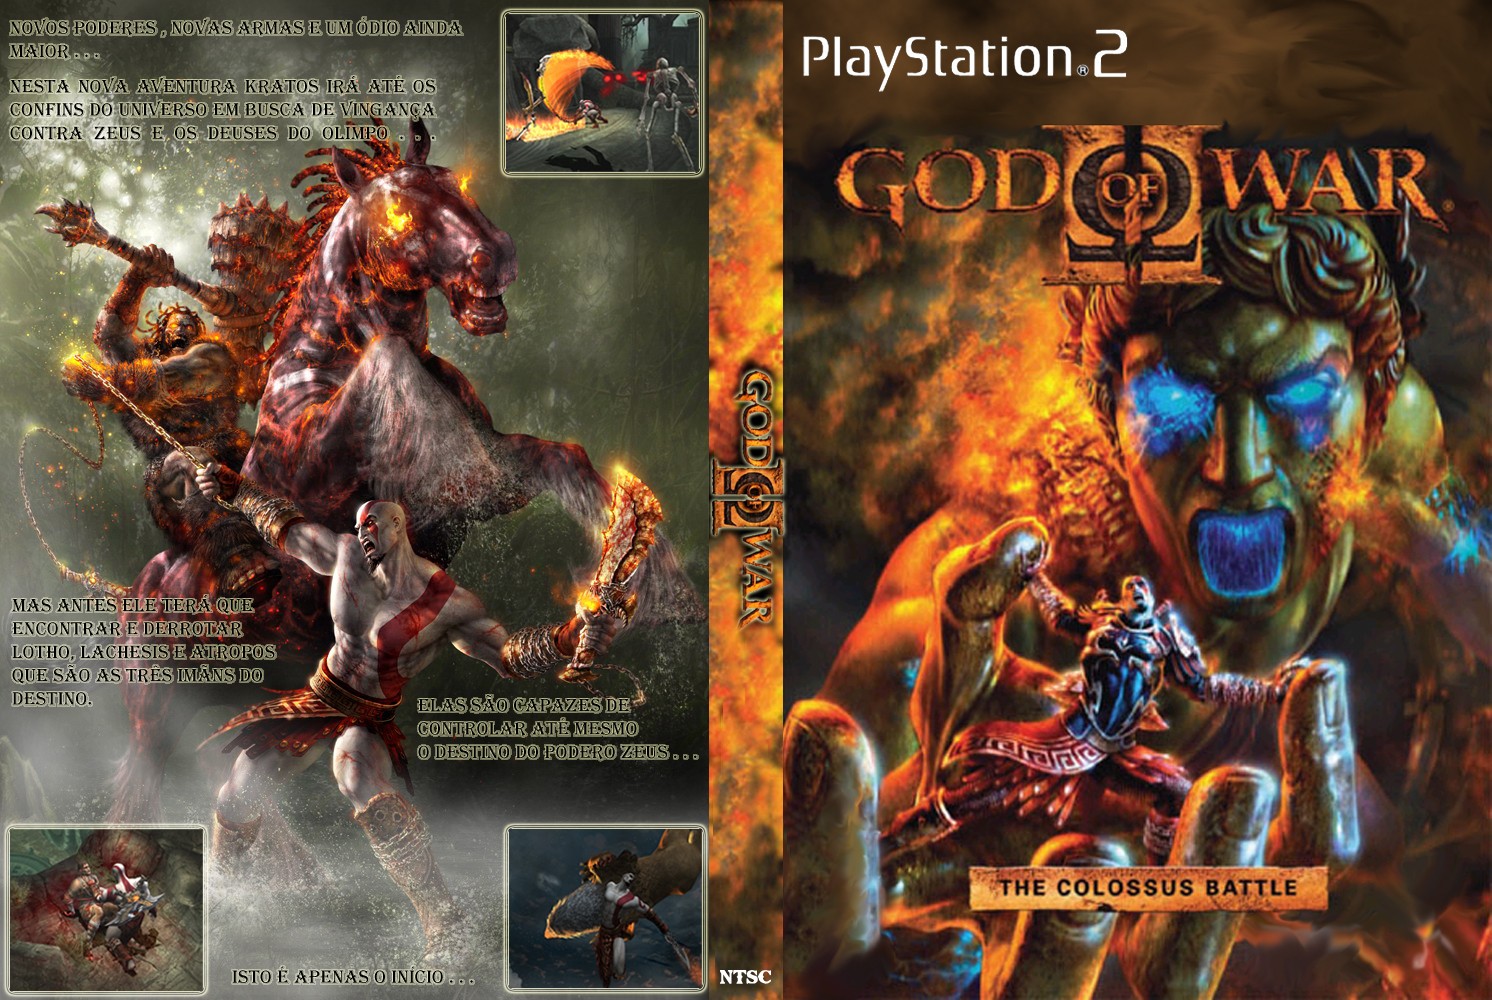 God of war 2 pnach file download